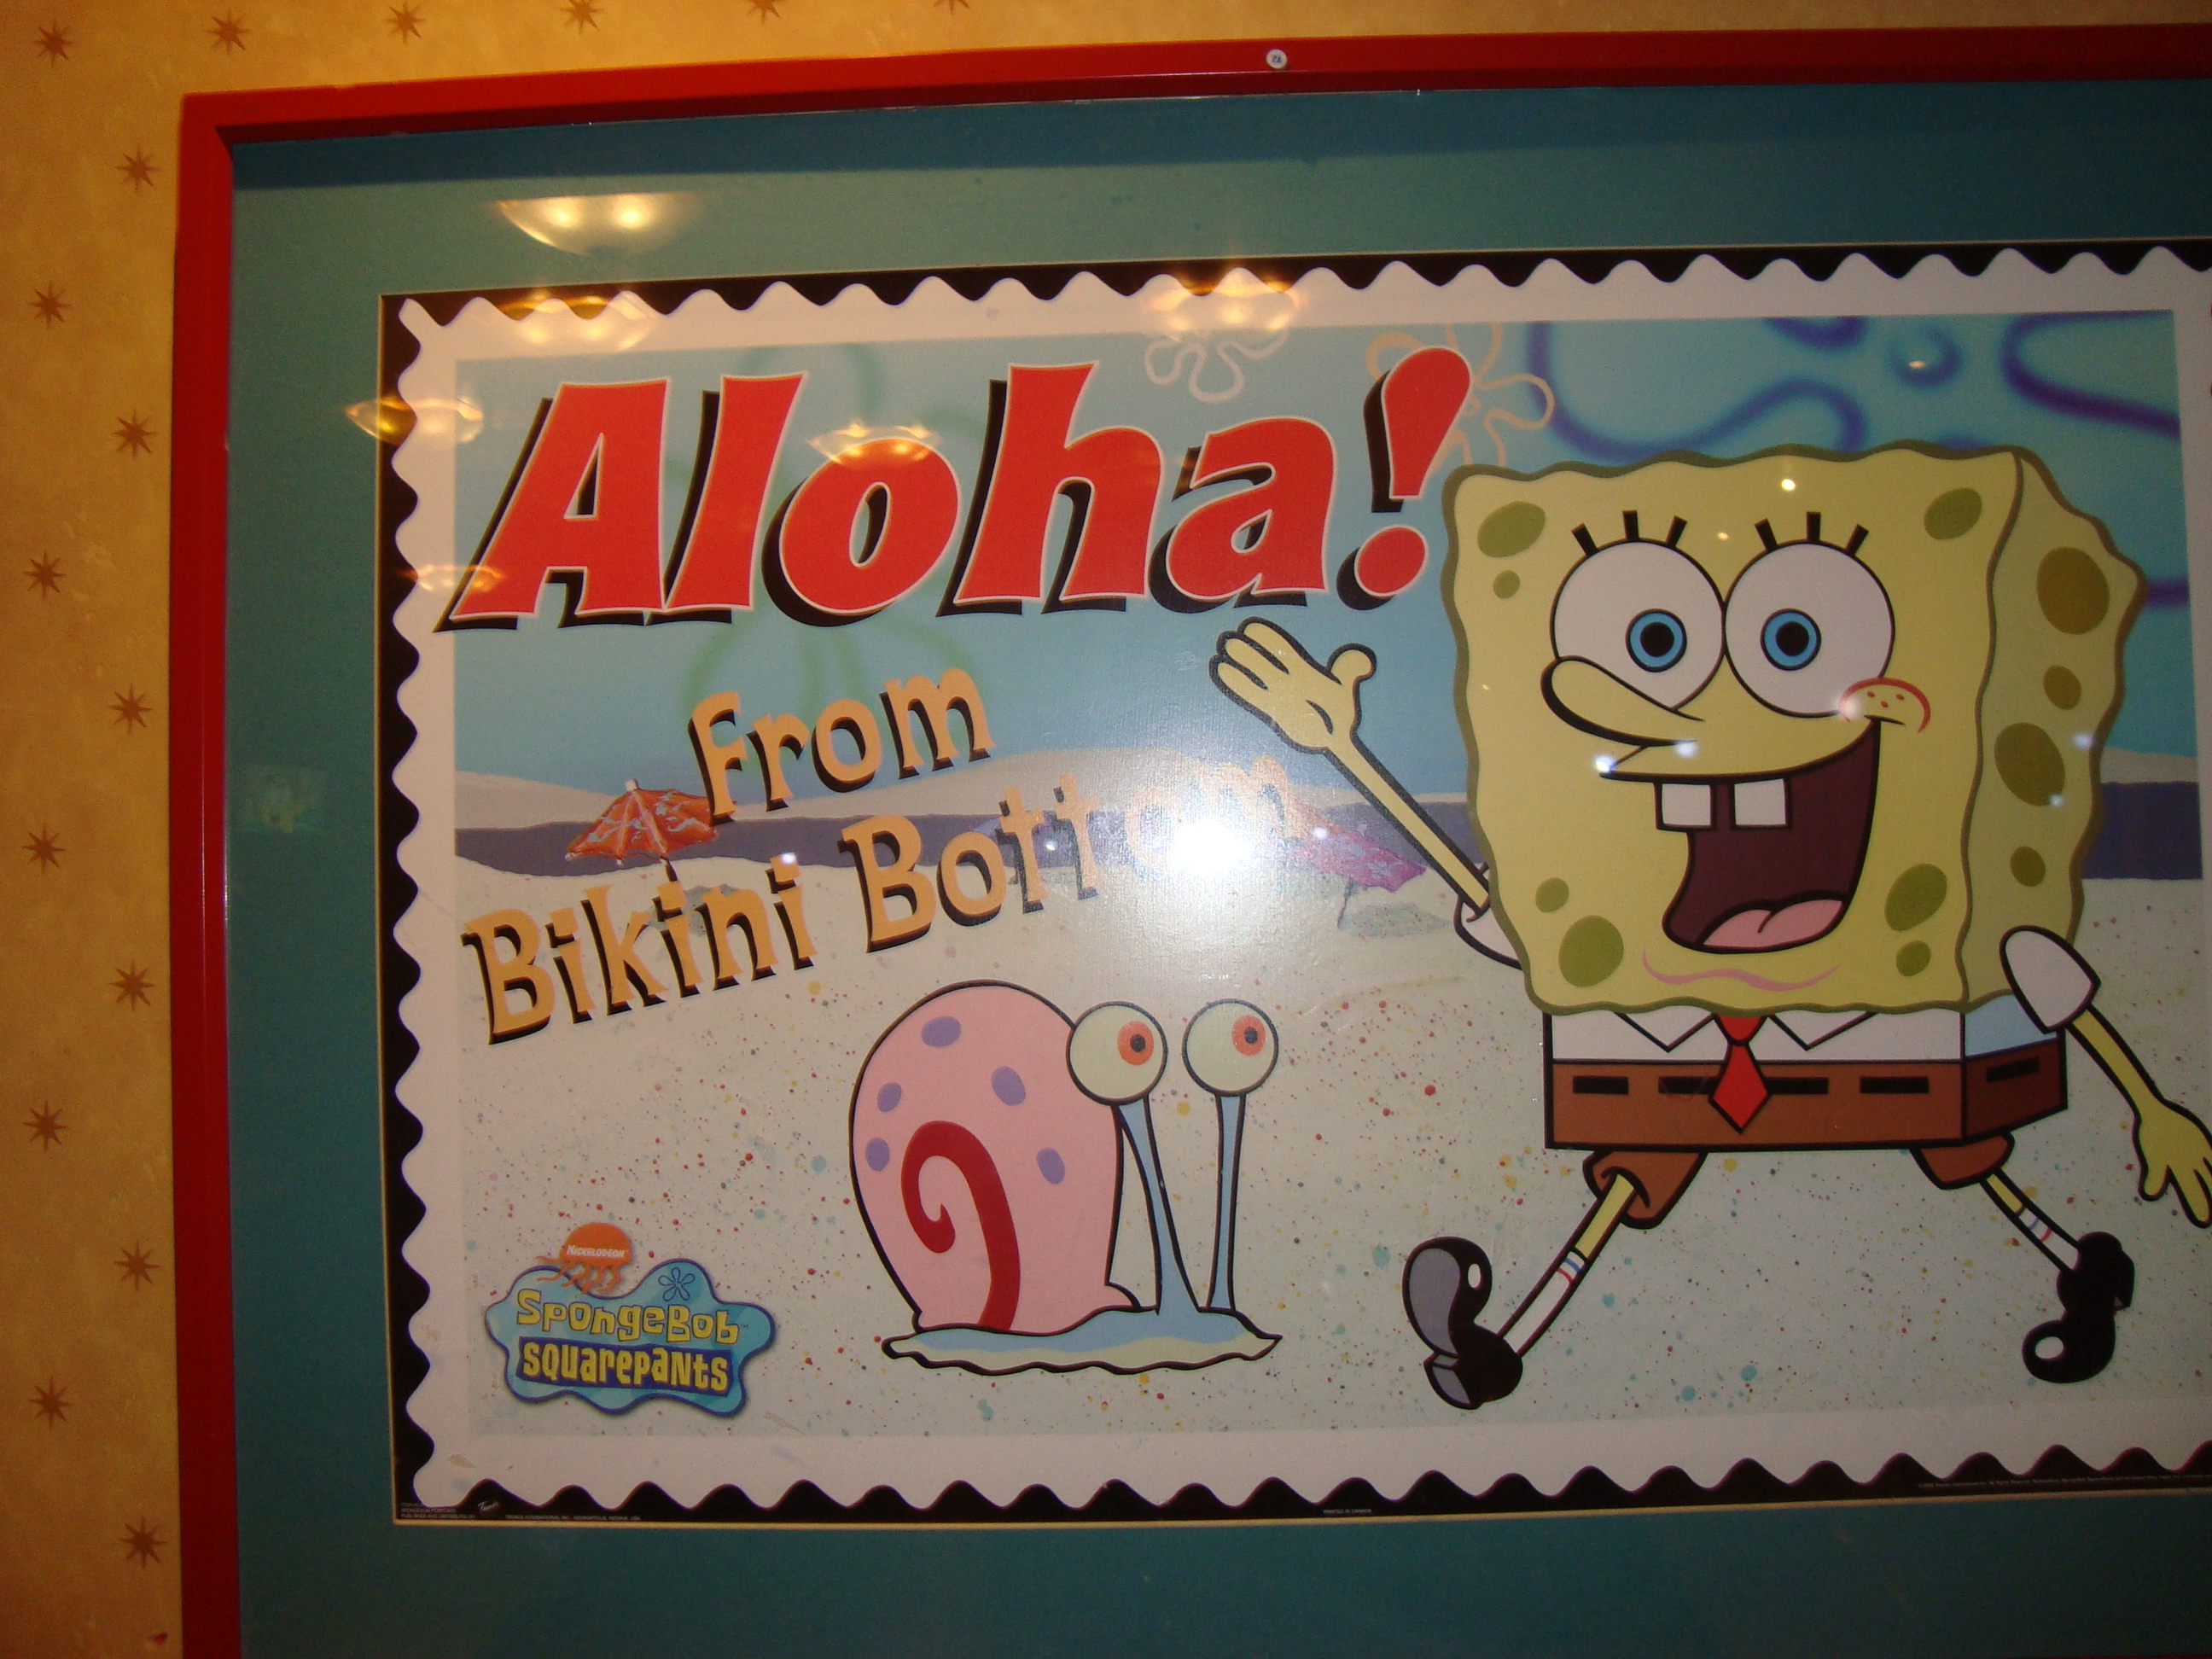 the spongebob poster:)